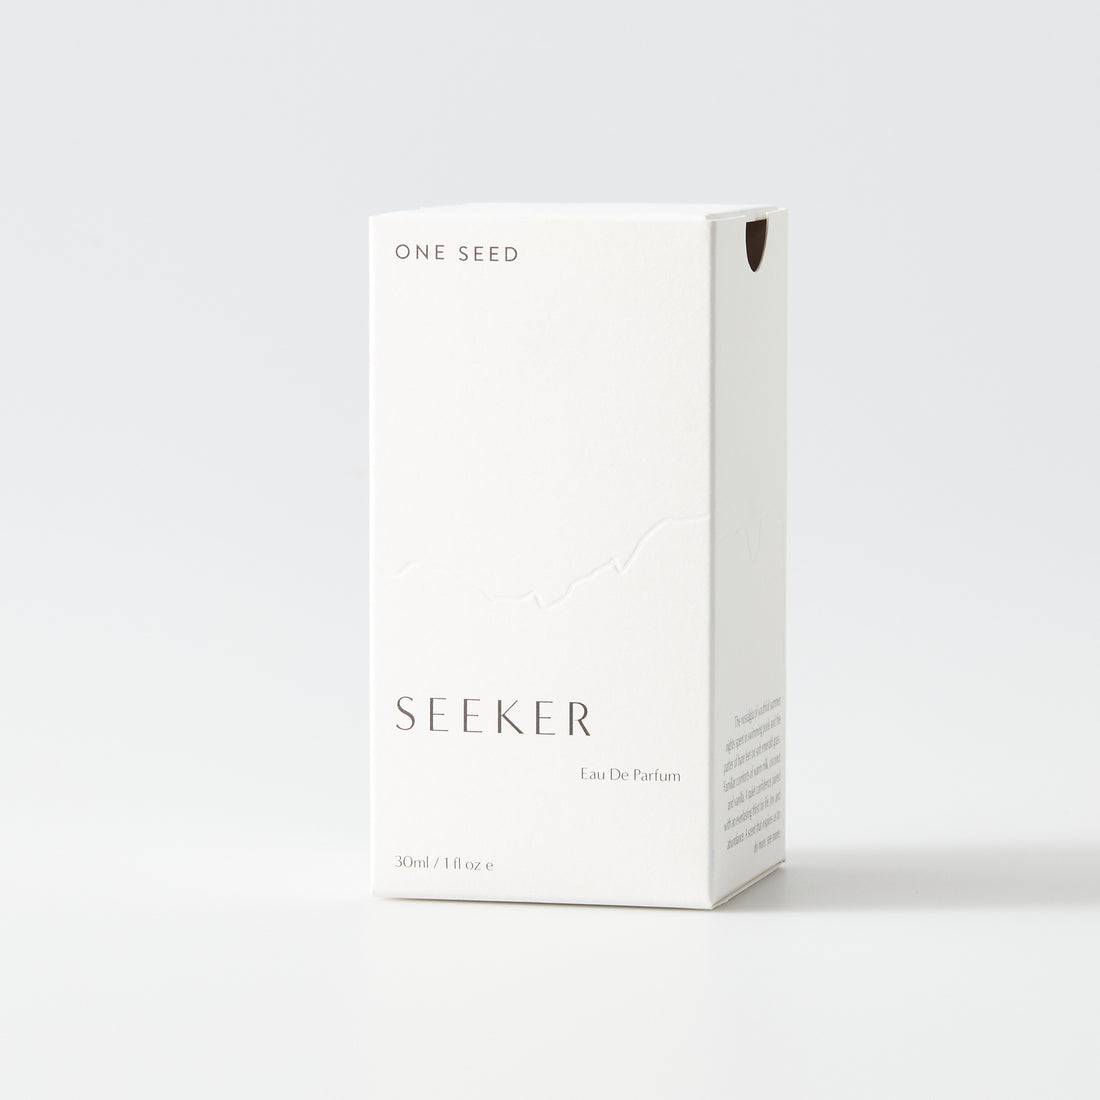 One Seed Seeker natural perfume